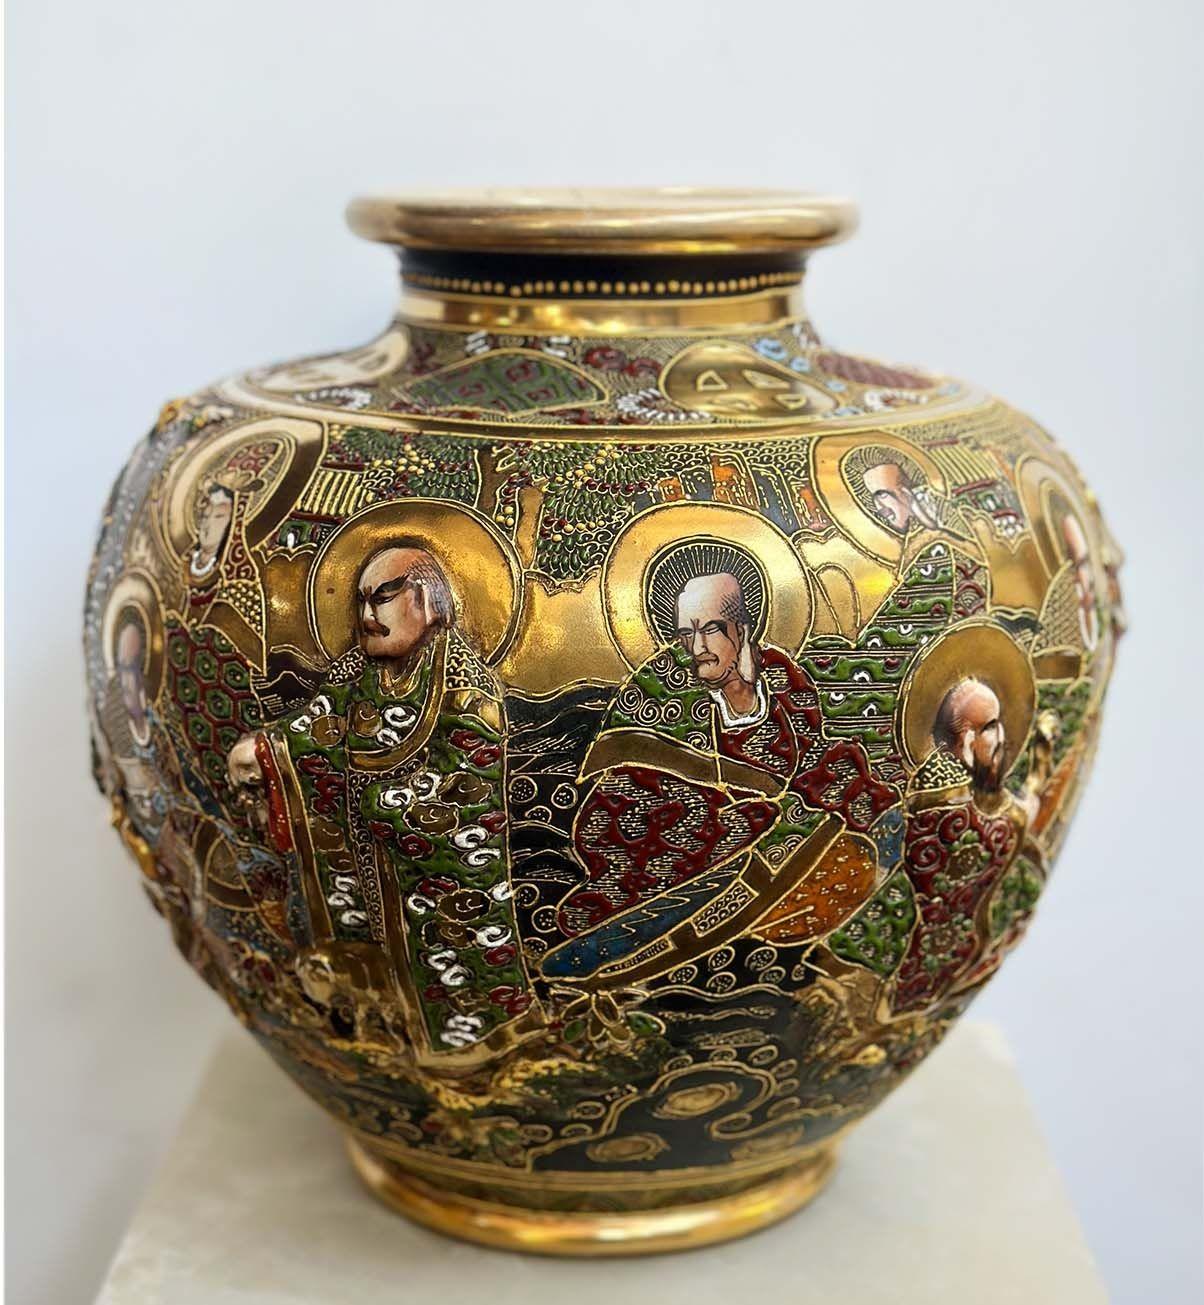 Vase ancien en porcelaine dorée de Satsuma représentant des figures immortelles peintes à la main tout autour de la pièce en haut relief. Fabriqué au Japon, c. 1900.
*Inclut la marque sur la base.
Dimensions :
11.5 